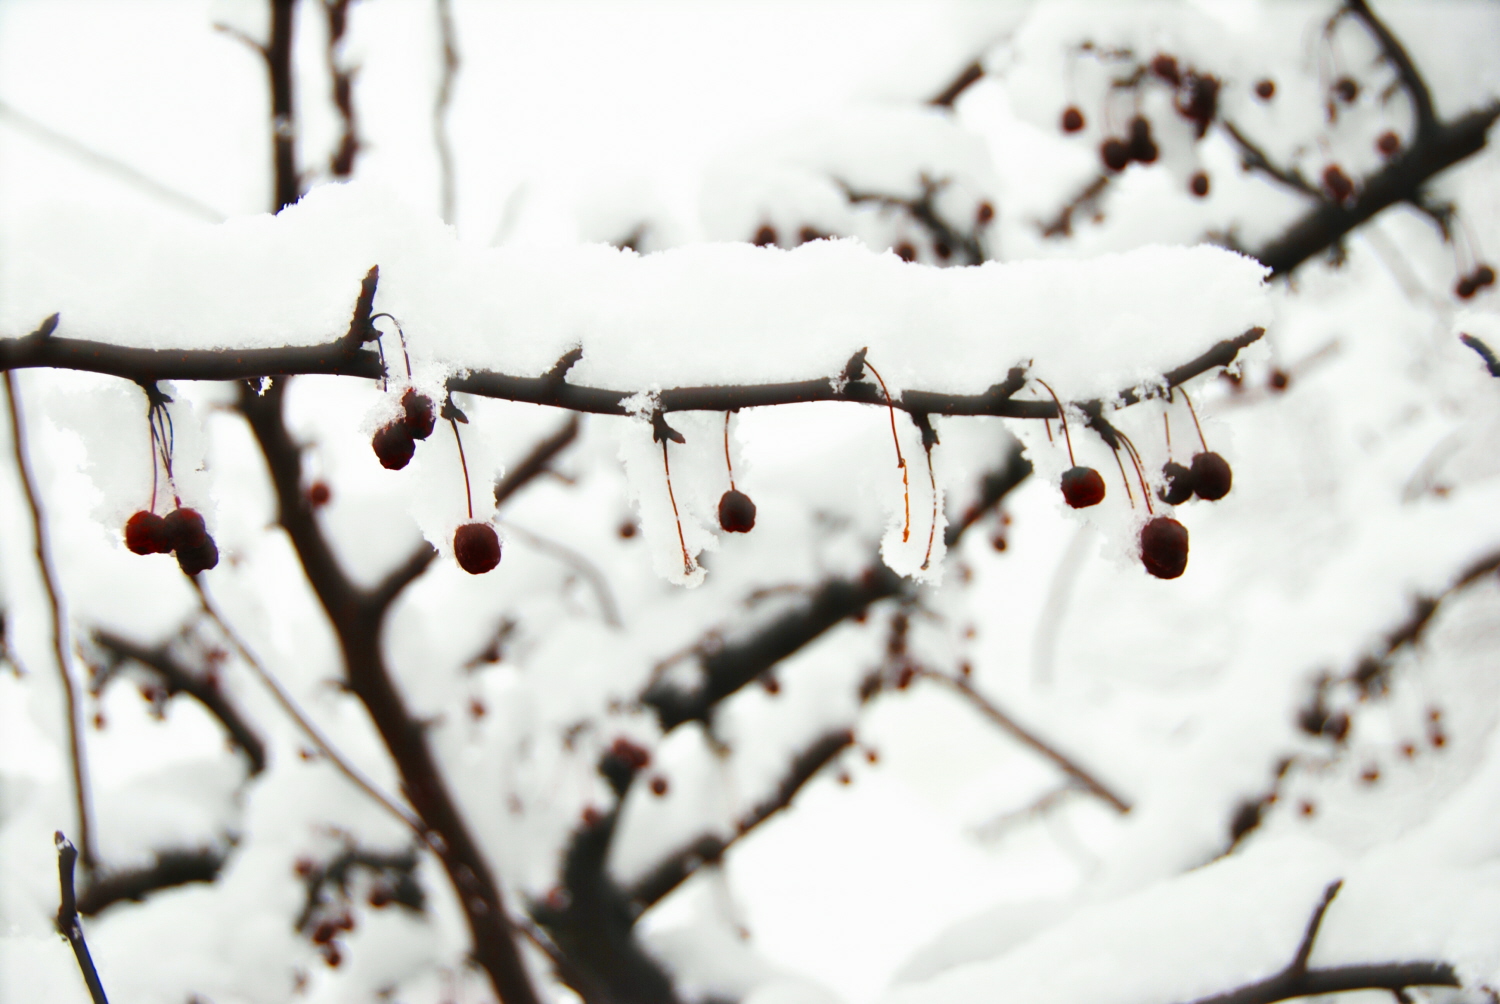 [RSberries+in+the+snow.jpg]